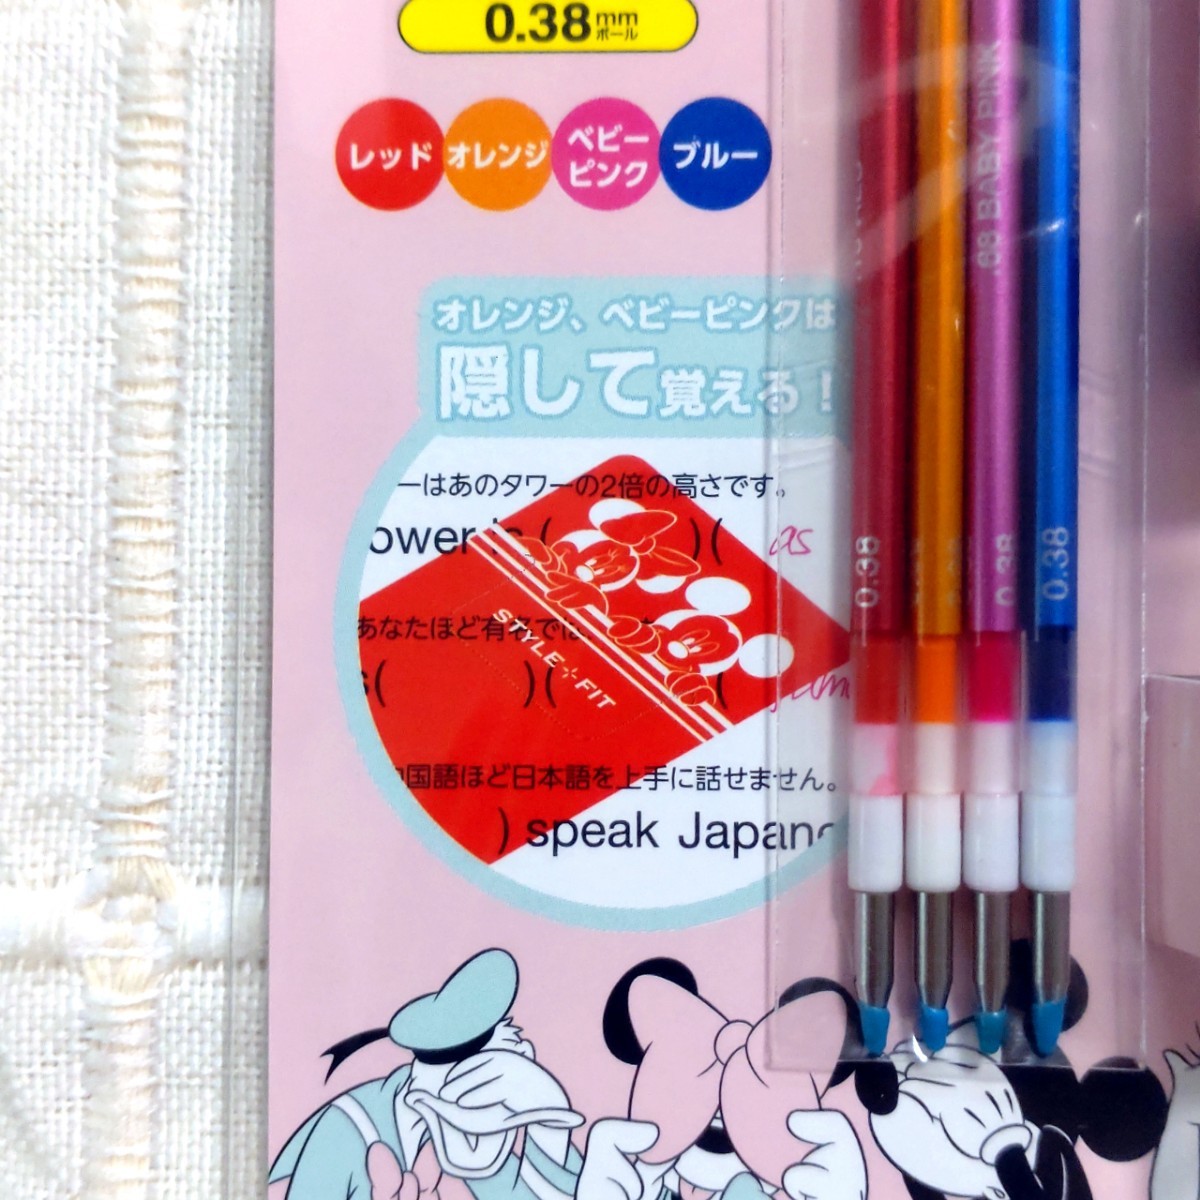 ディズニー ミッキー&ミニー&ドナルド&デイジー 4色ボールペン 新品